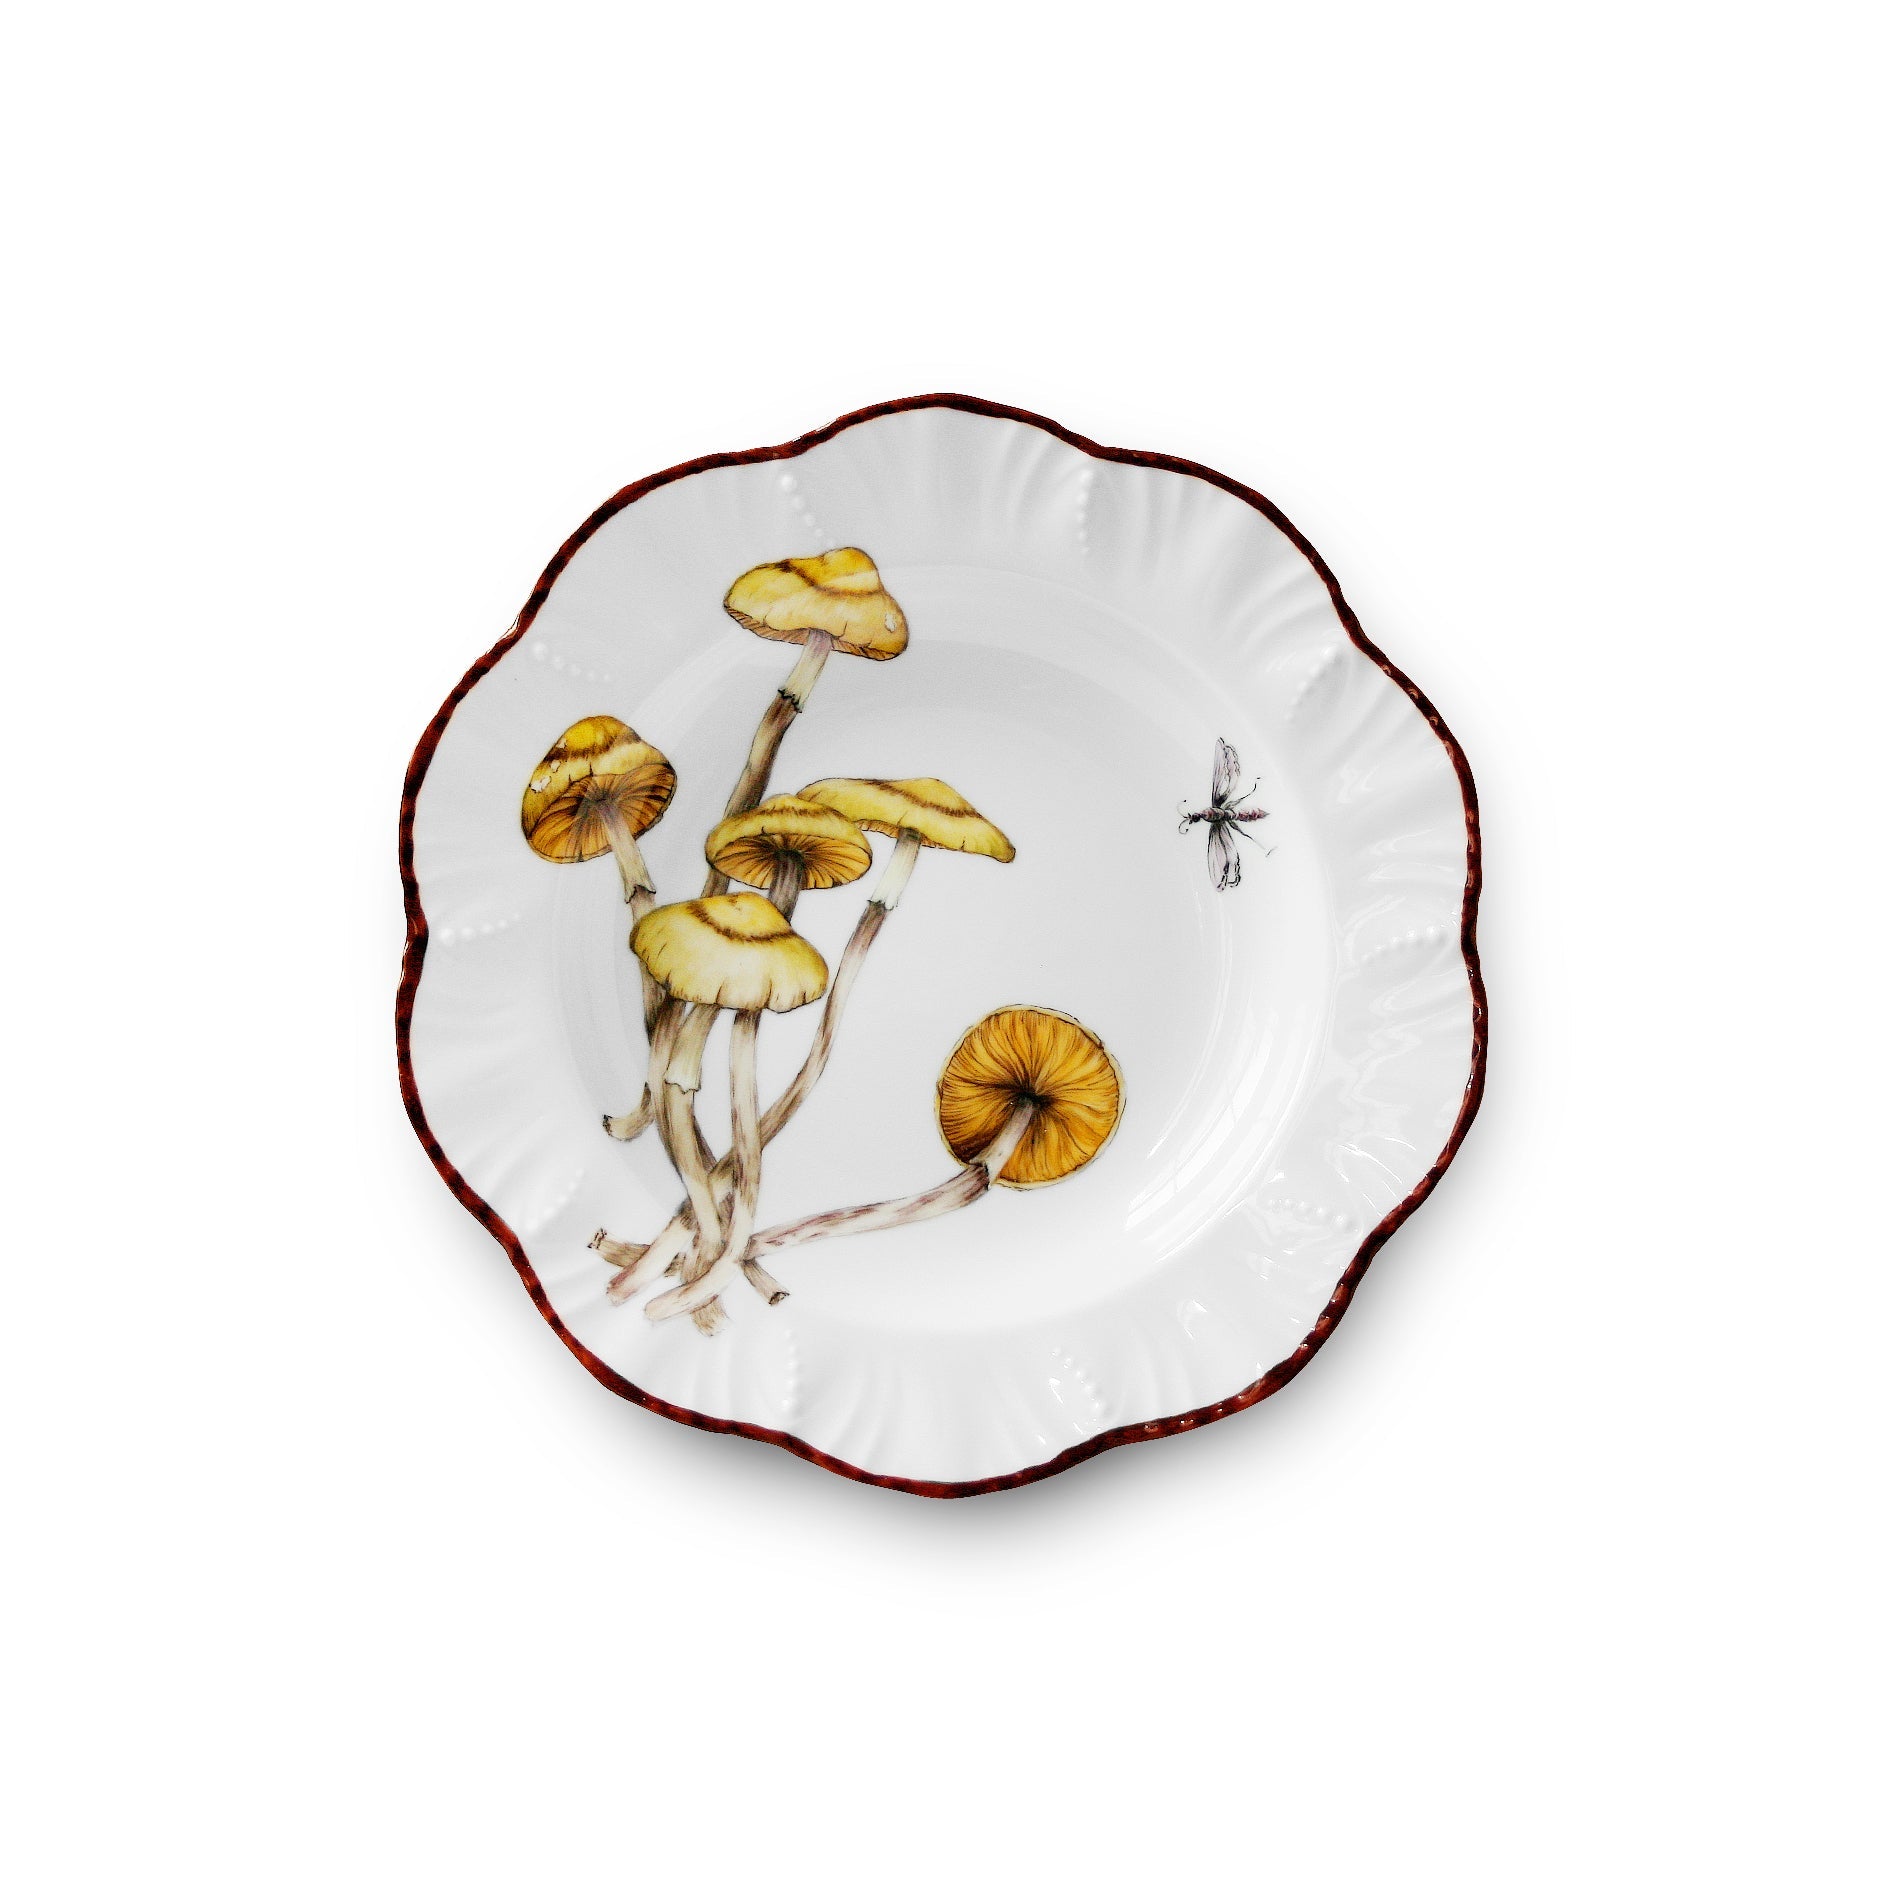 Les champignons - Soup plate